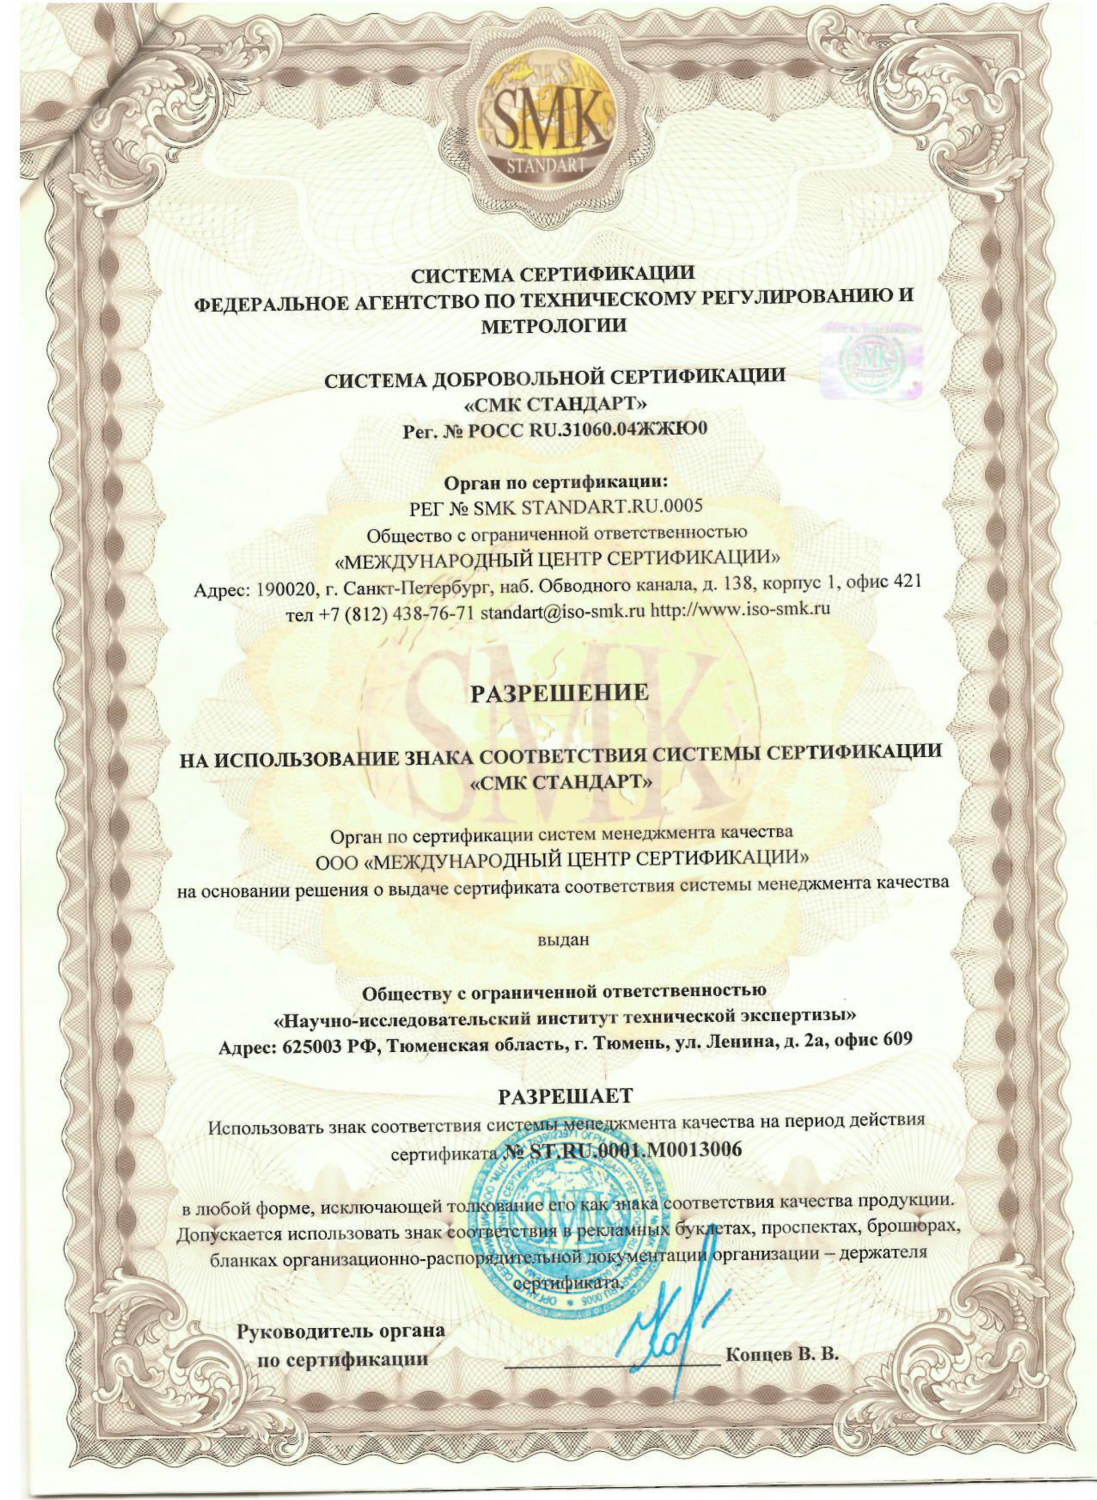 Разрешение ООО НИИ "ТехЭкспертиза" на использование знака соответствия системы сертификации "СМК Стандарт"